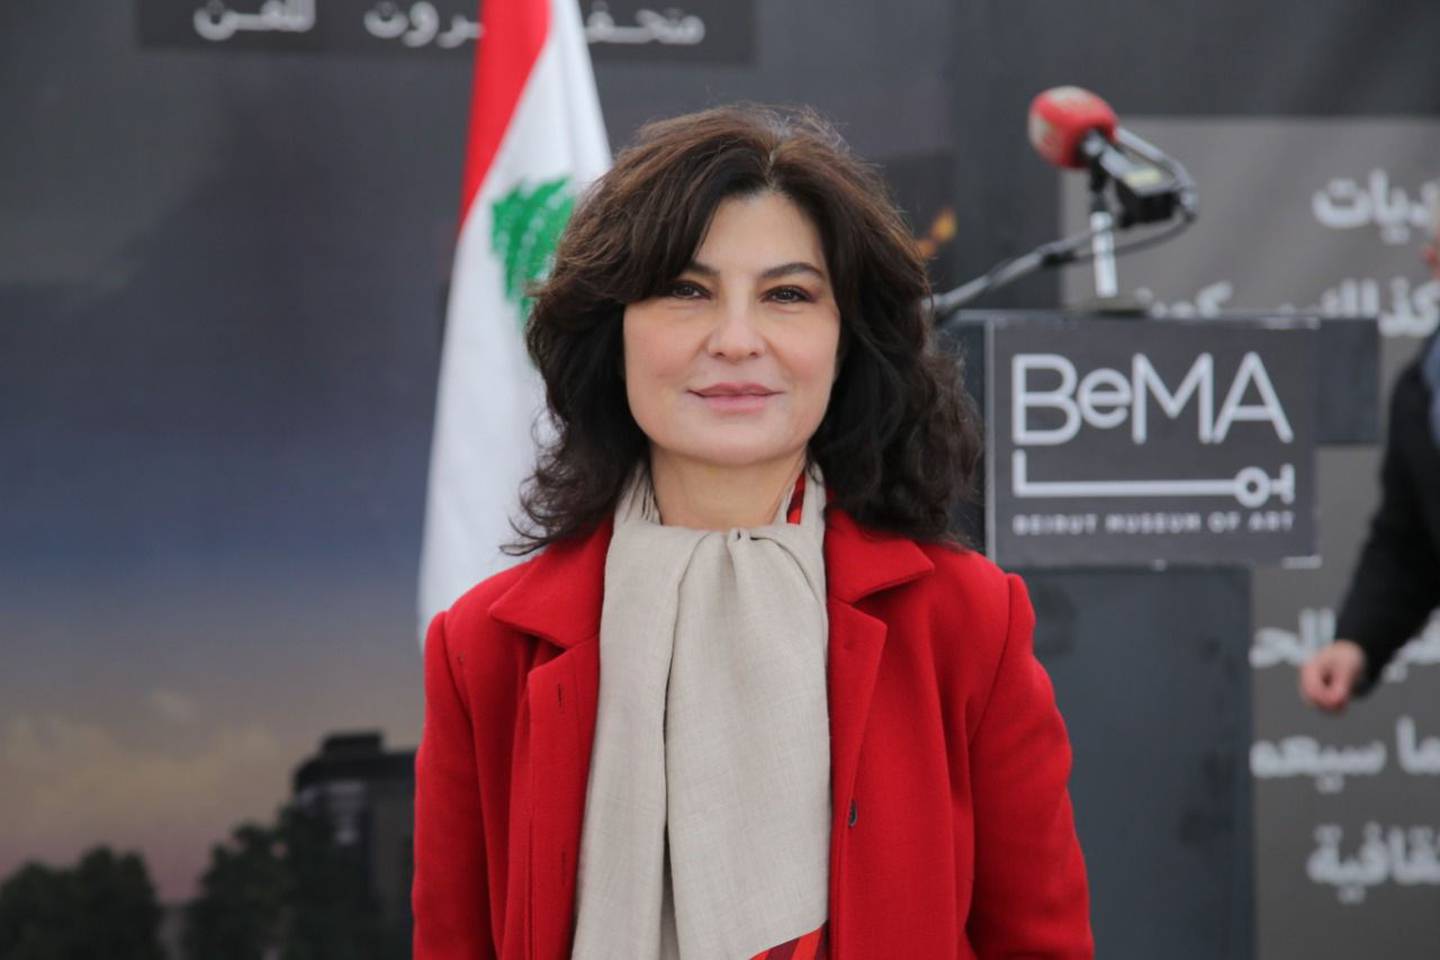 BeMA co-founder Sandra Abou Nader